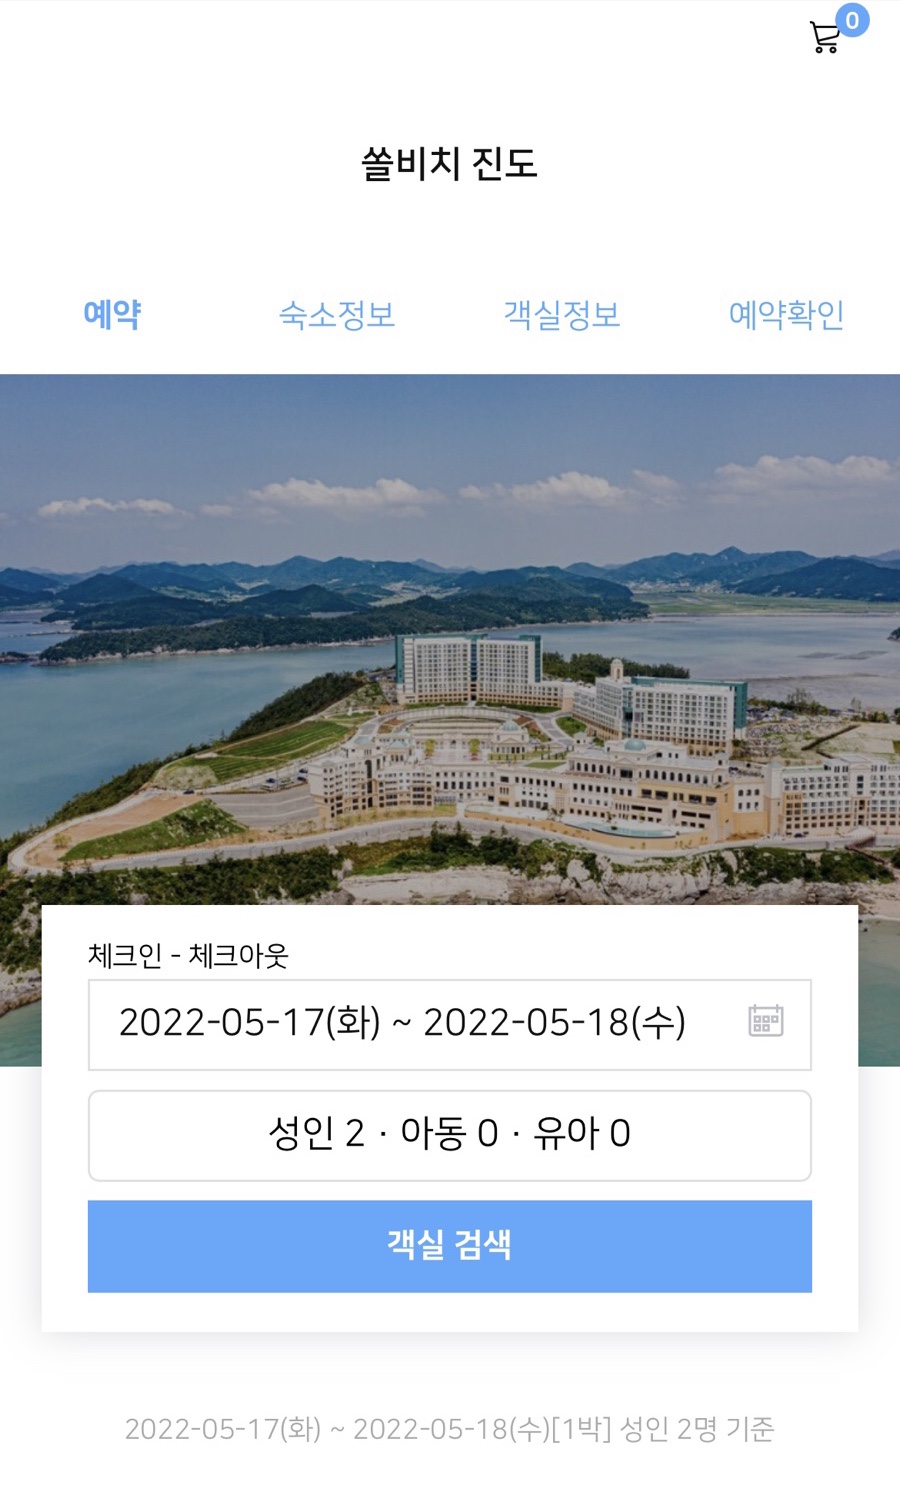 여름휴가지 추천 진도쏠비치 호텔 & 리조트 구글호텔 특가 소개